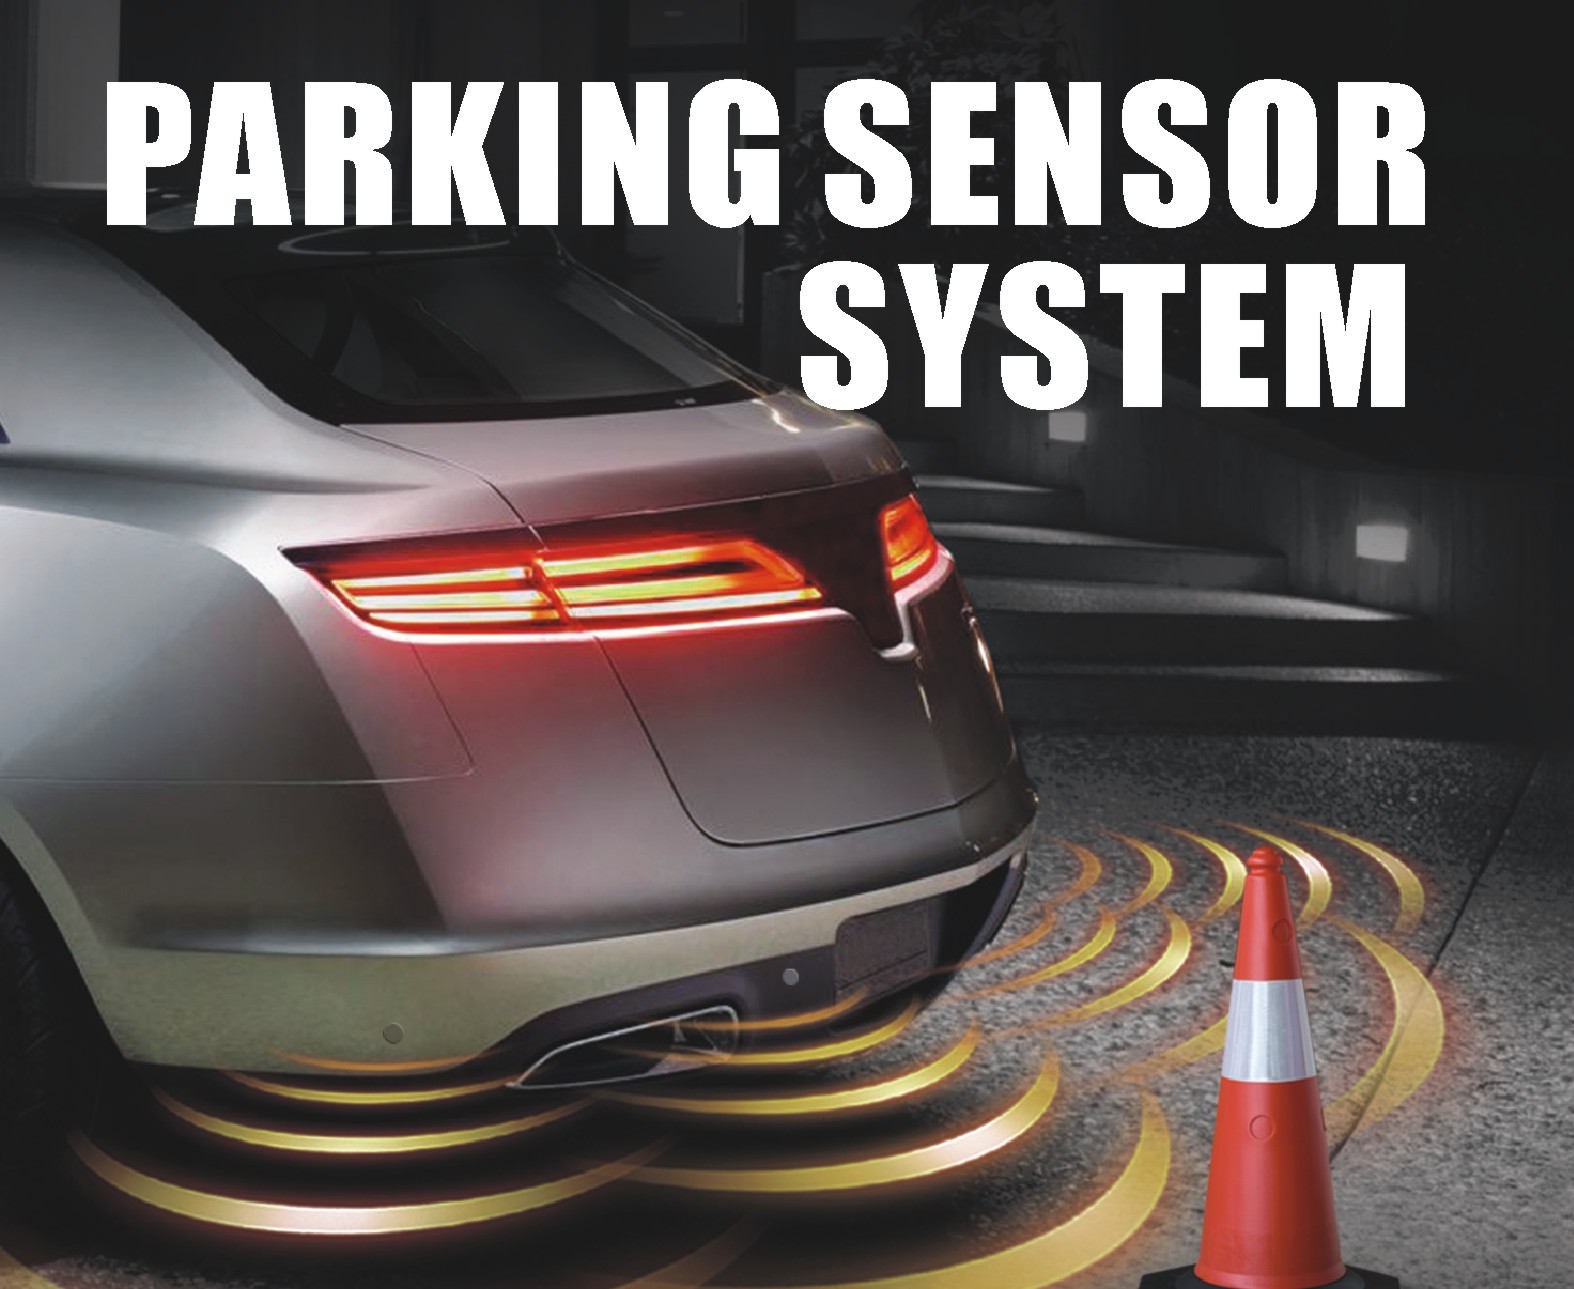 Parking sensor system